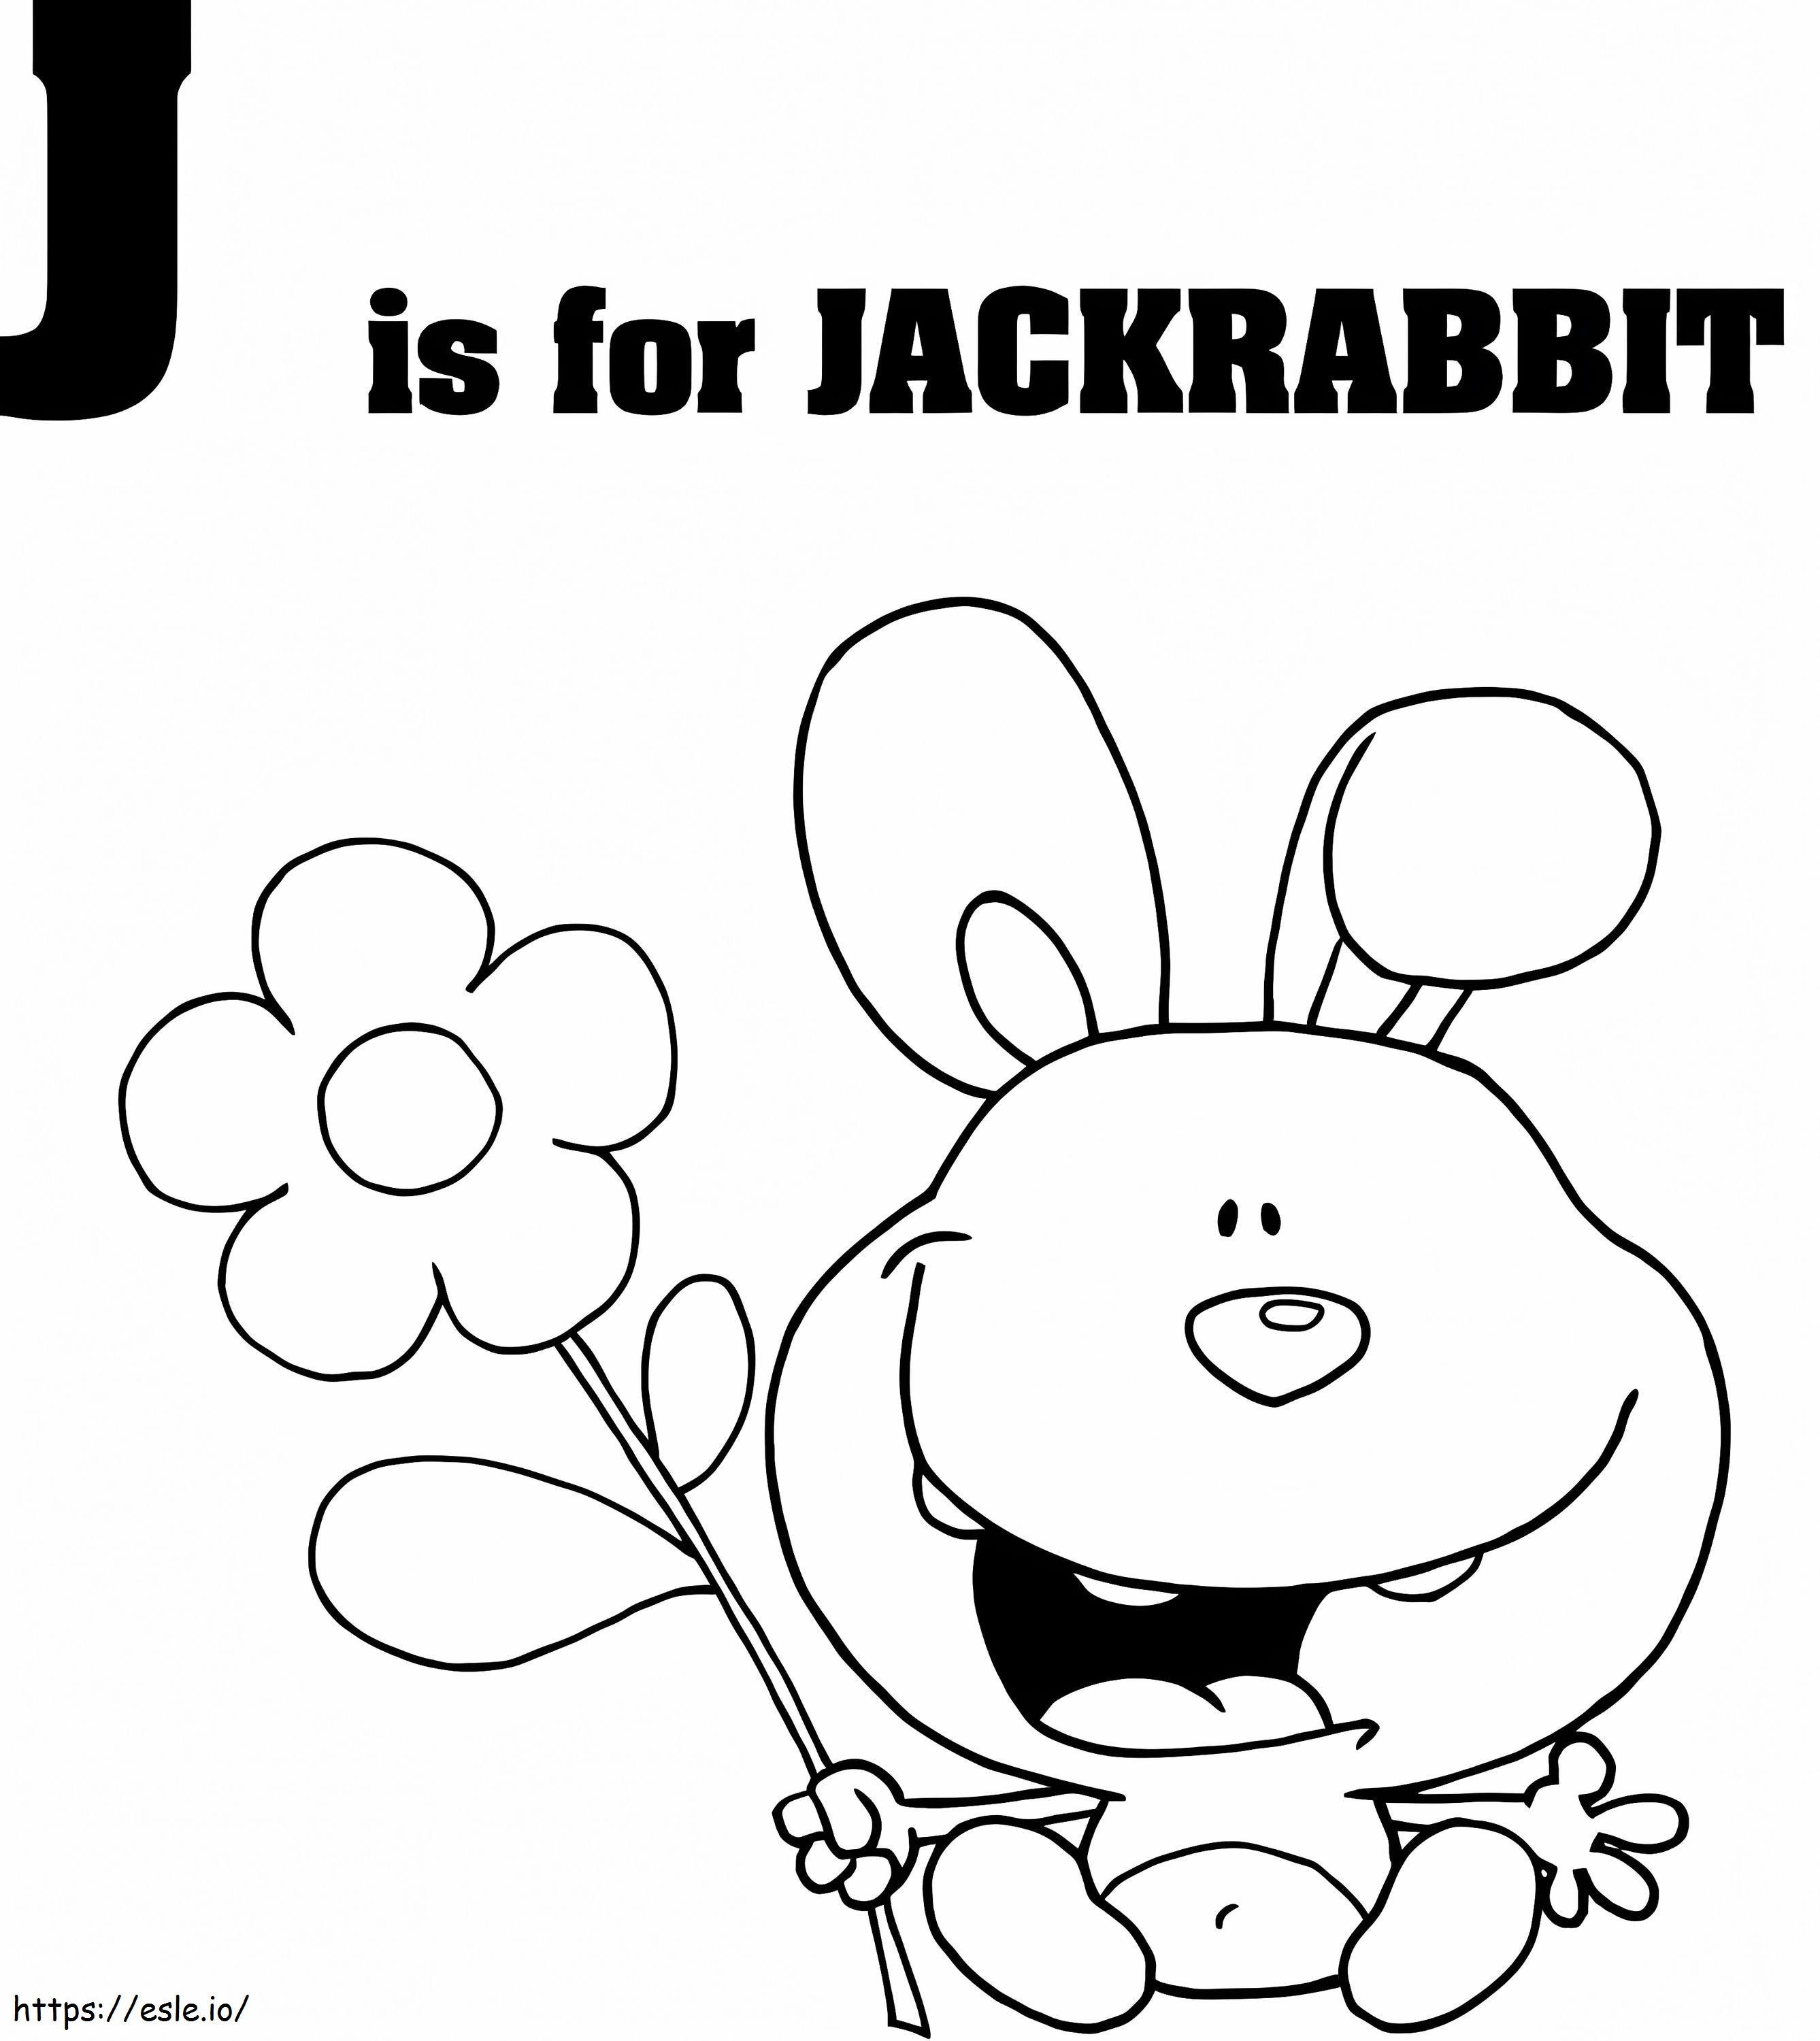 Jackrabbit-letter J kleurplaat kleurplaat